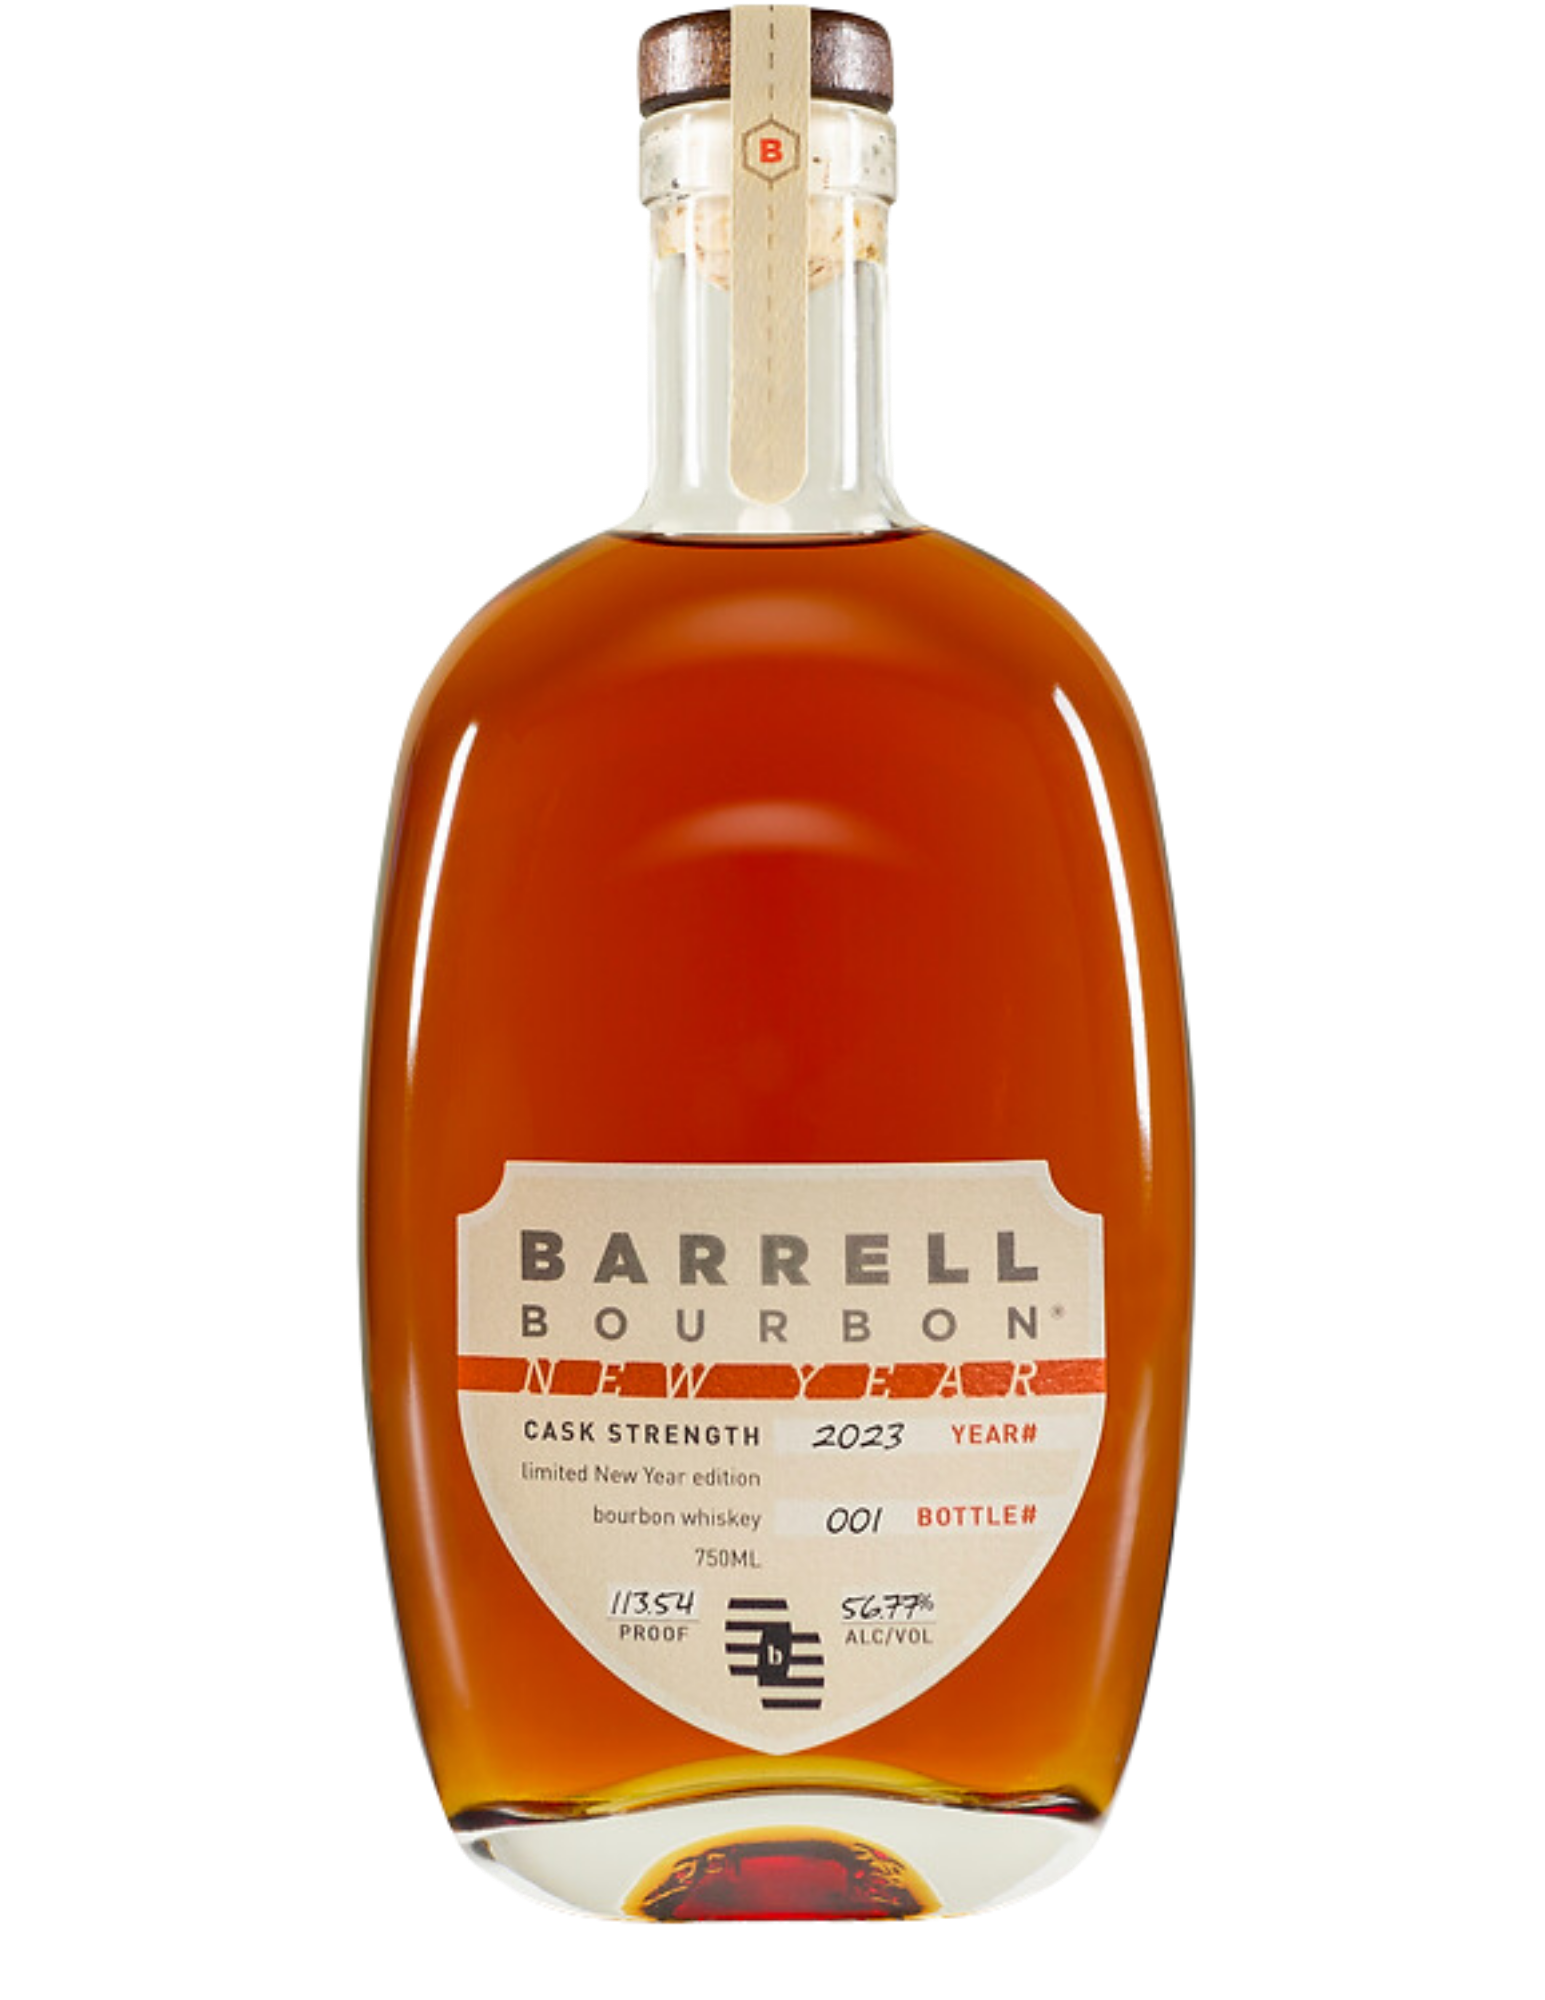 BARRELL BOURBON NEW YEAR CASK STRENGTH 2023 EDITION KENTUCKY 750ML - Remedy Liquor